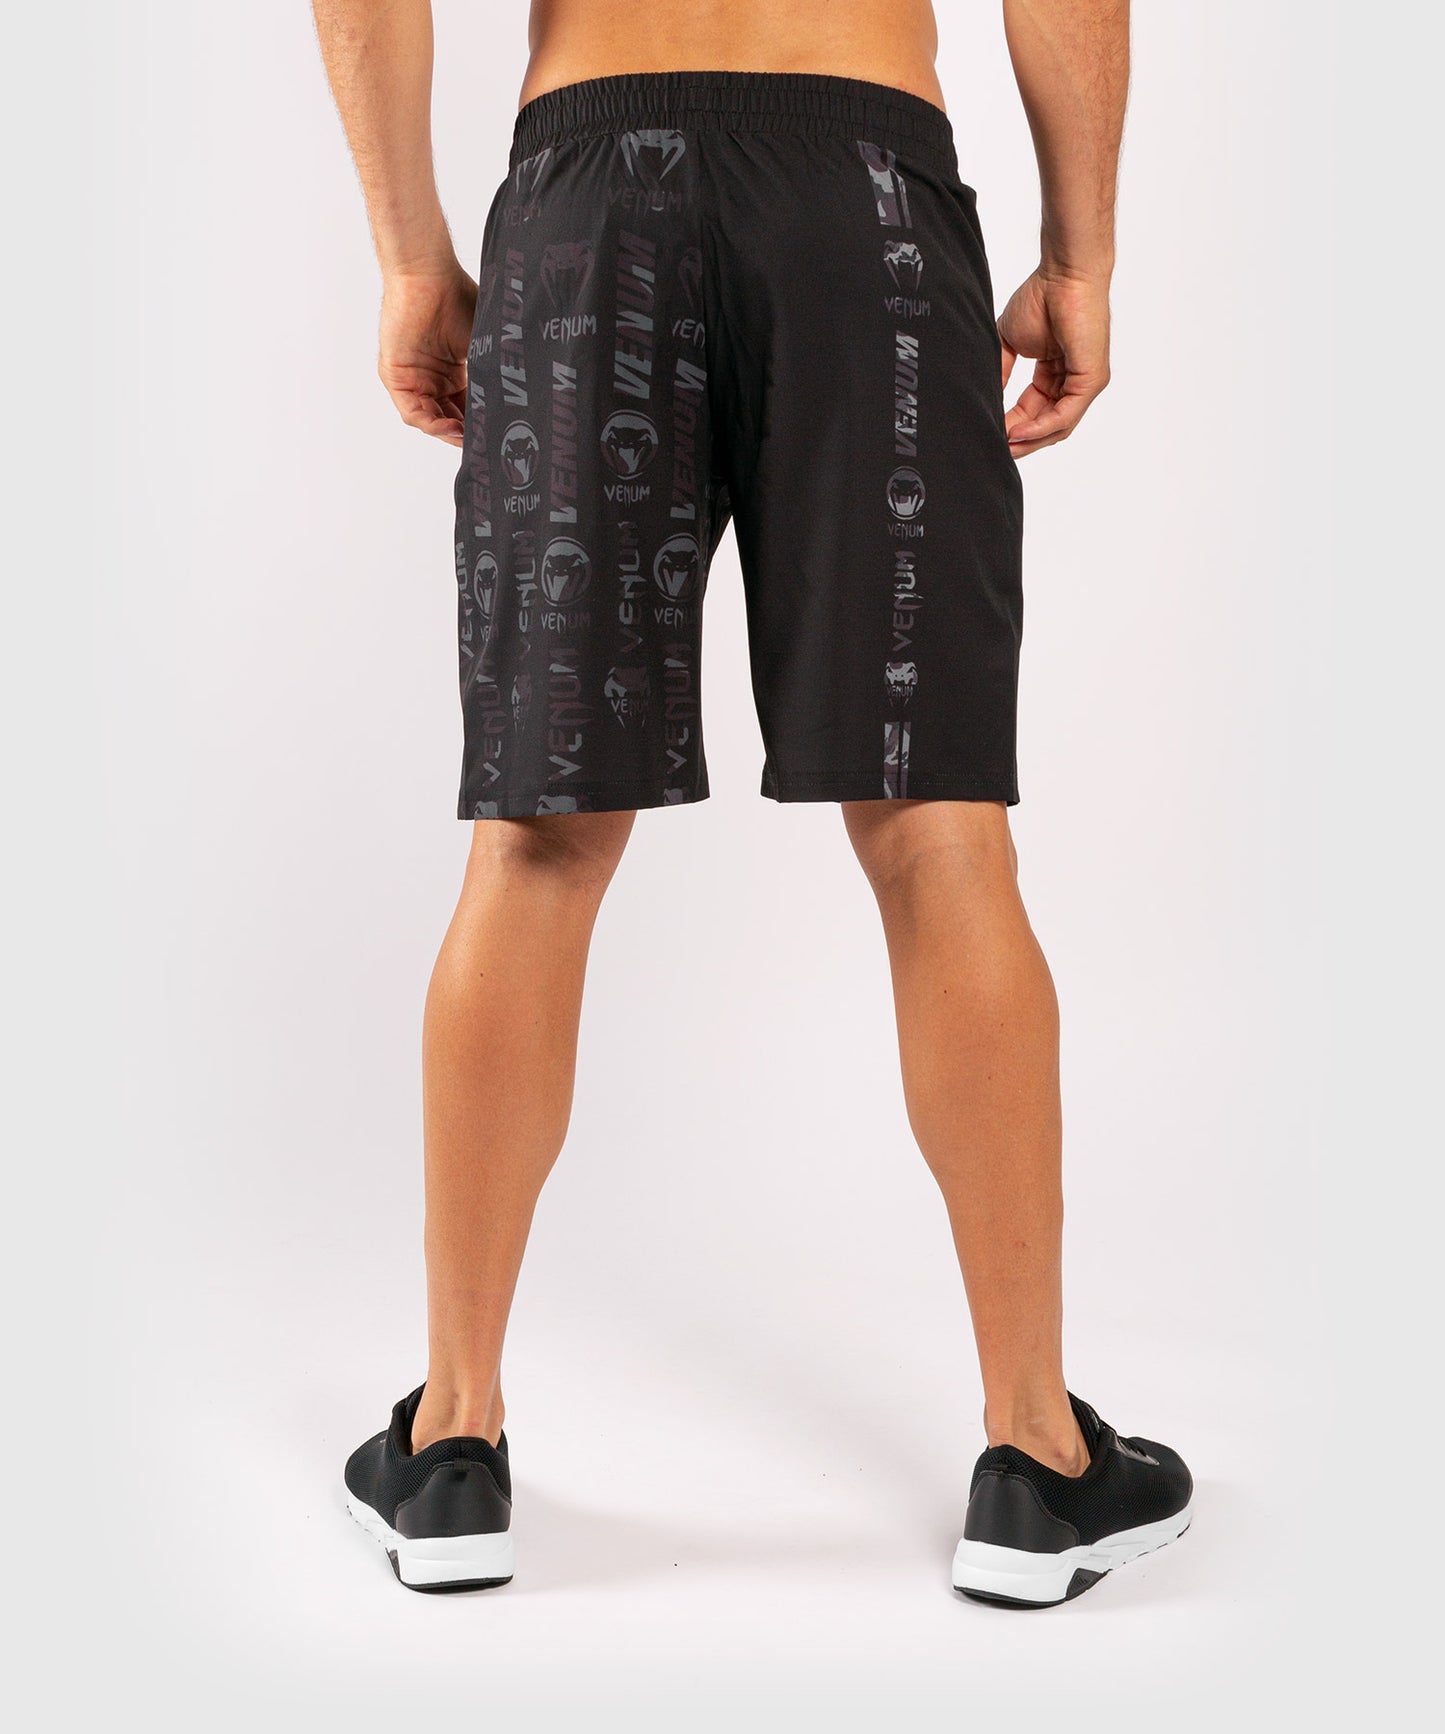 Pantalones Cortos Fitness Venum Logos  - Negro/Camo Urbano